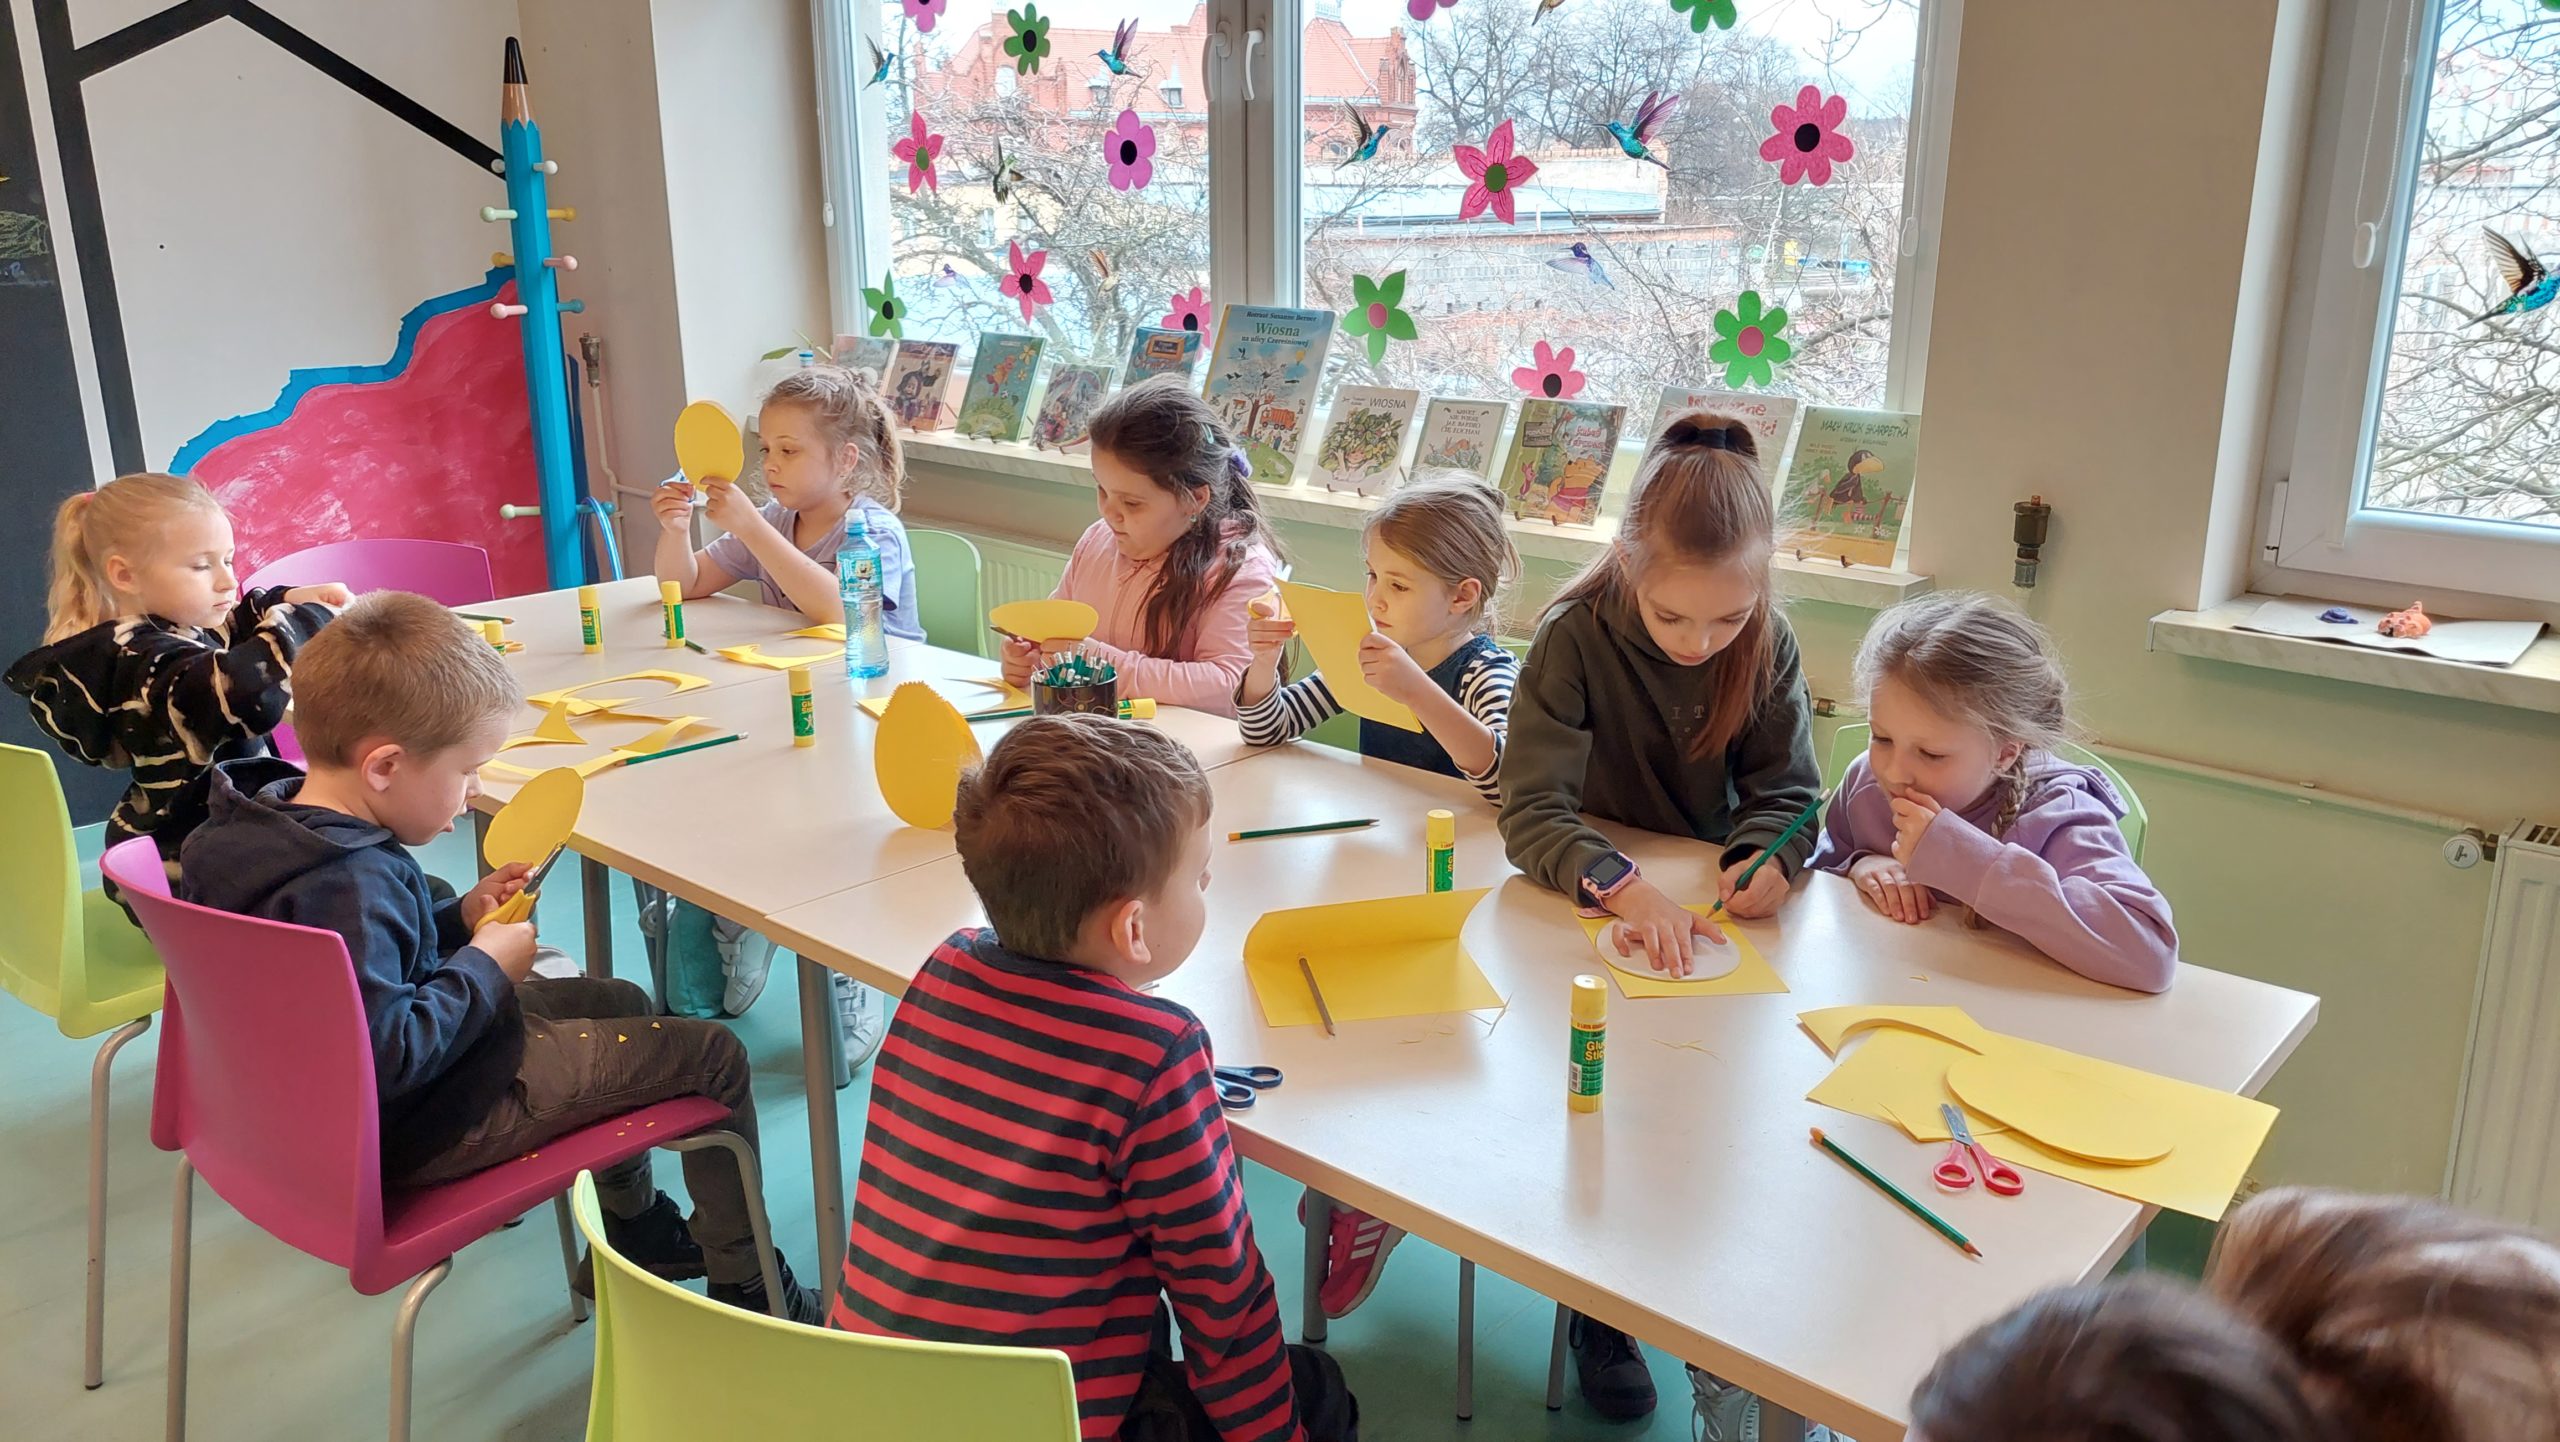 Czytelnia dla dzieci. Siedzące przy stołach dzieci odrysowują na żółtej kartce kształt jajka i wycinają.